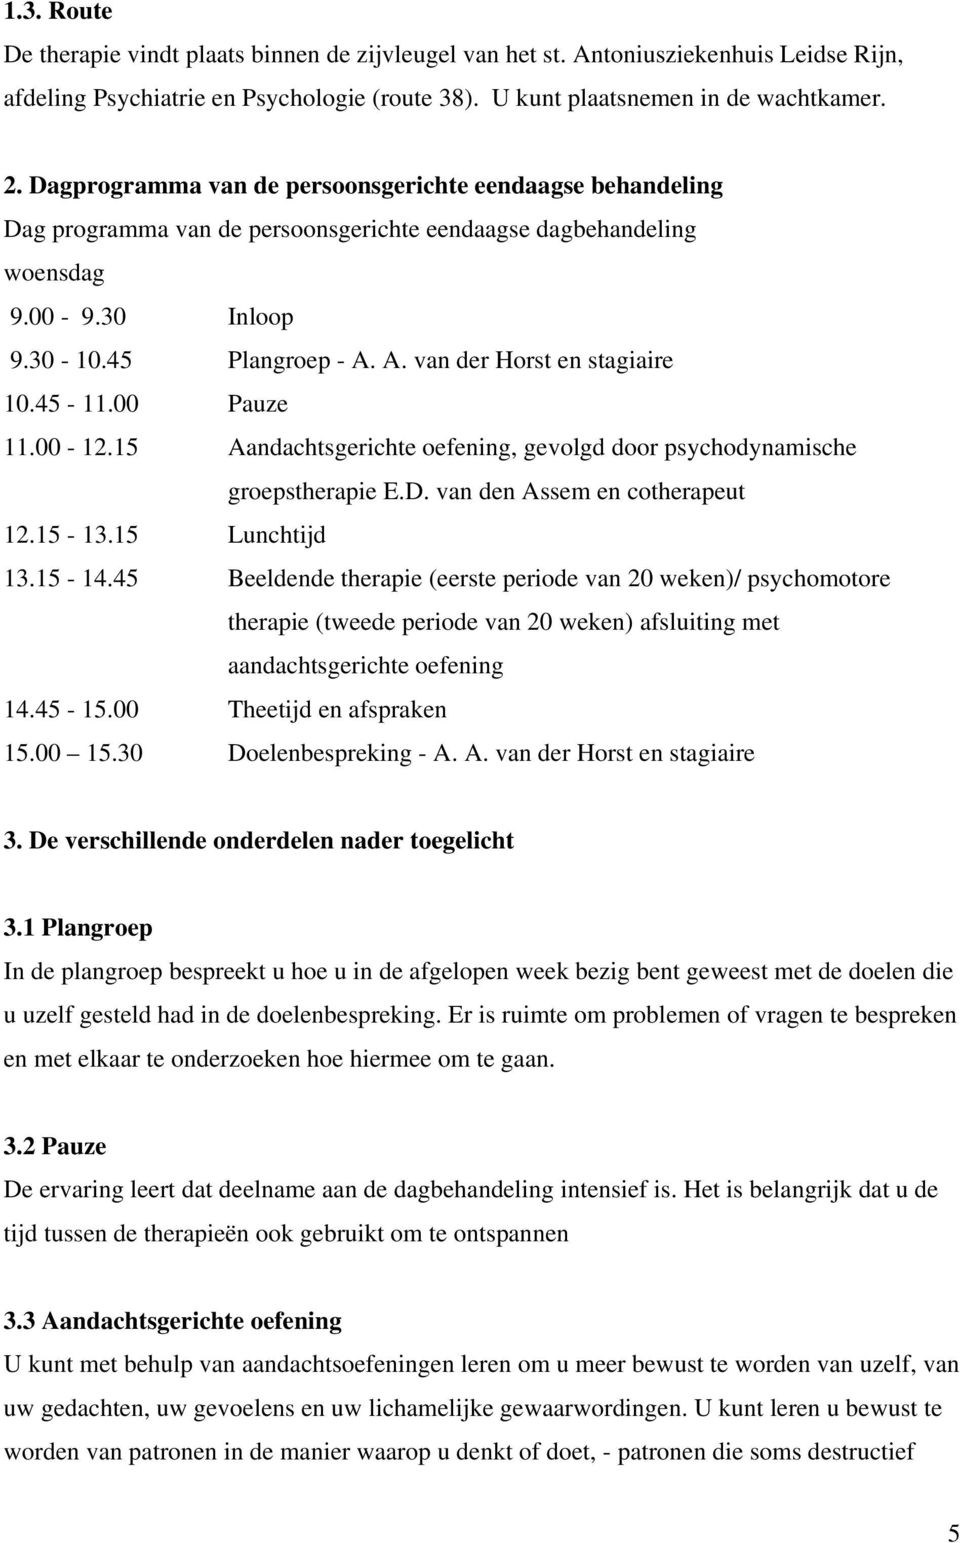 A. van der Horst en stagiaire 10.45-11.00 Pauze 11.00-12.15 Aandachtsgerichte oefening, gevolgd door psychodynamische groepstherapie E.D. van den Assem en cotherapeut 12.15-13.15 Lunchtijd 13.15-14.